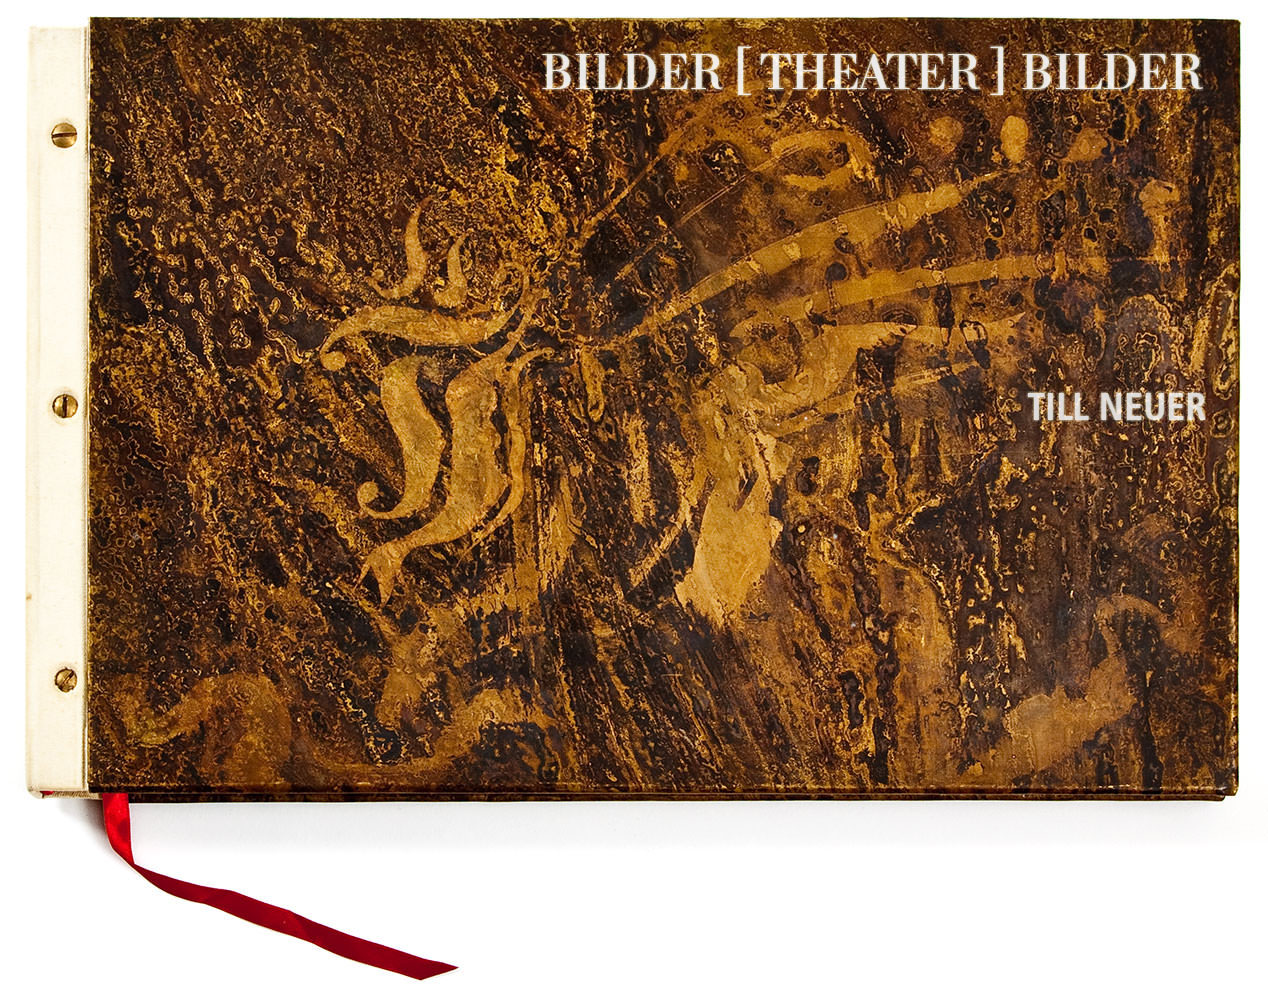 Buchgestaltung BilderTheaterBilder, Buchdeckel: geätztes Messingblech, Titel, 305 × 430 mm, © Till Neuer